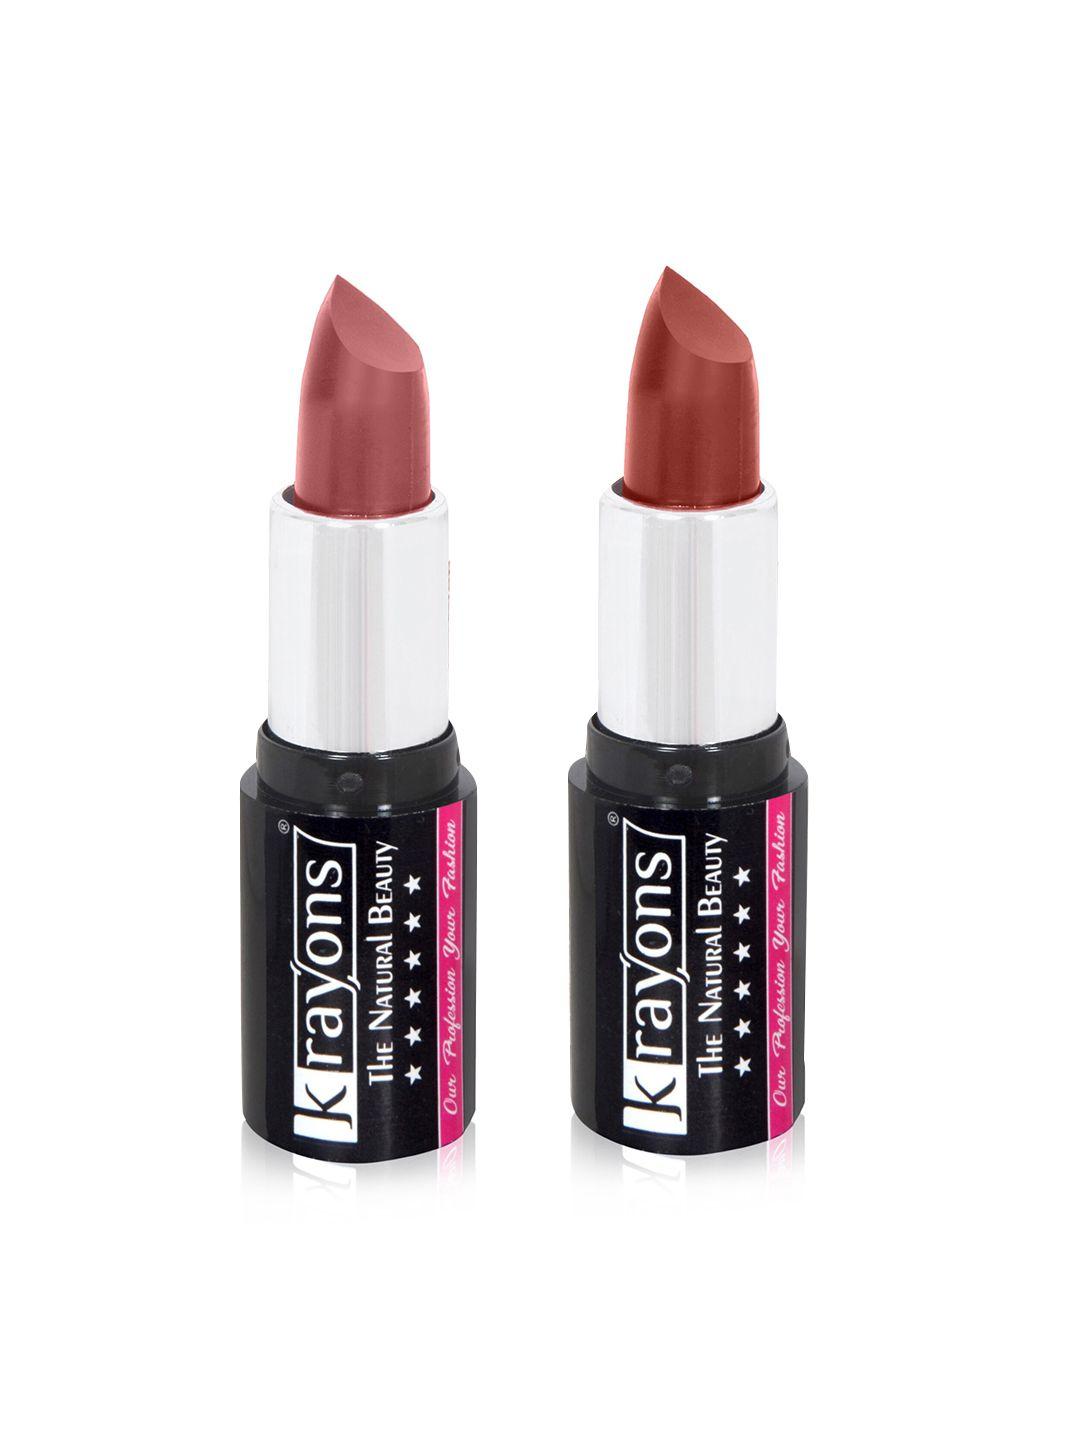 krayons the natural beauty set of 2 moisturizing matte lipsticks - 4 g each